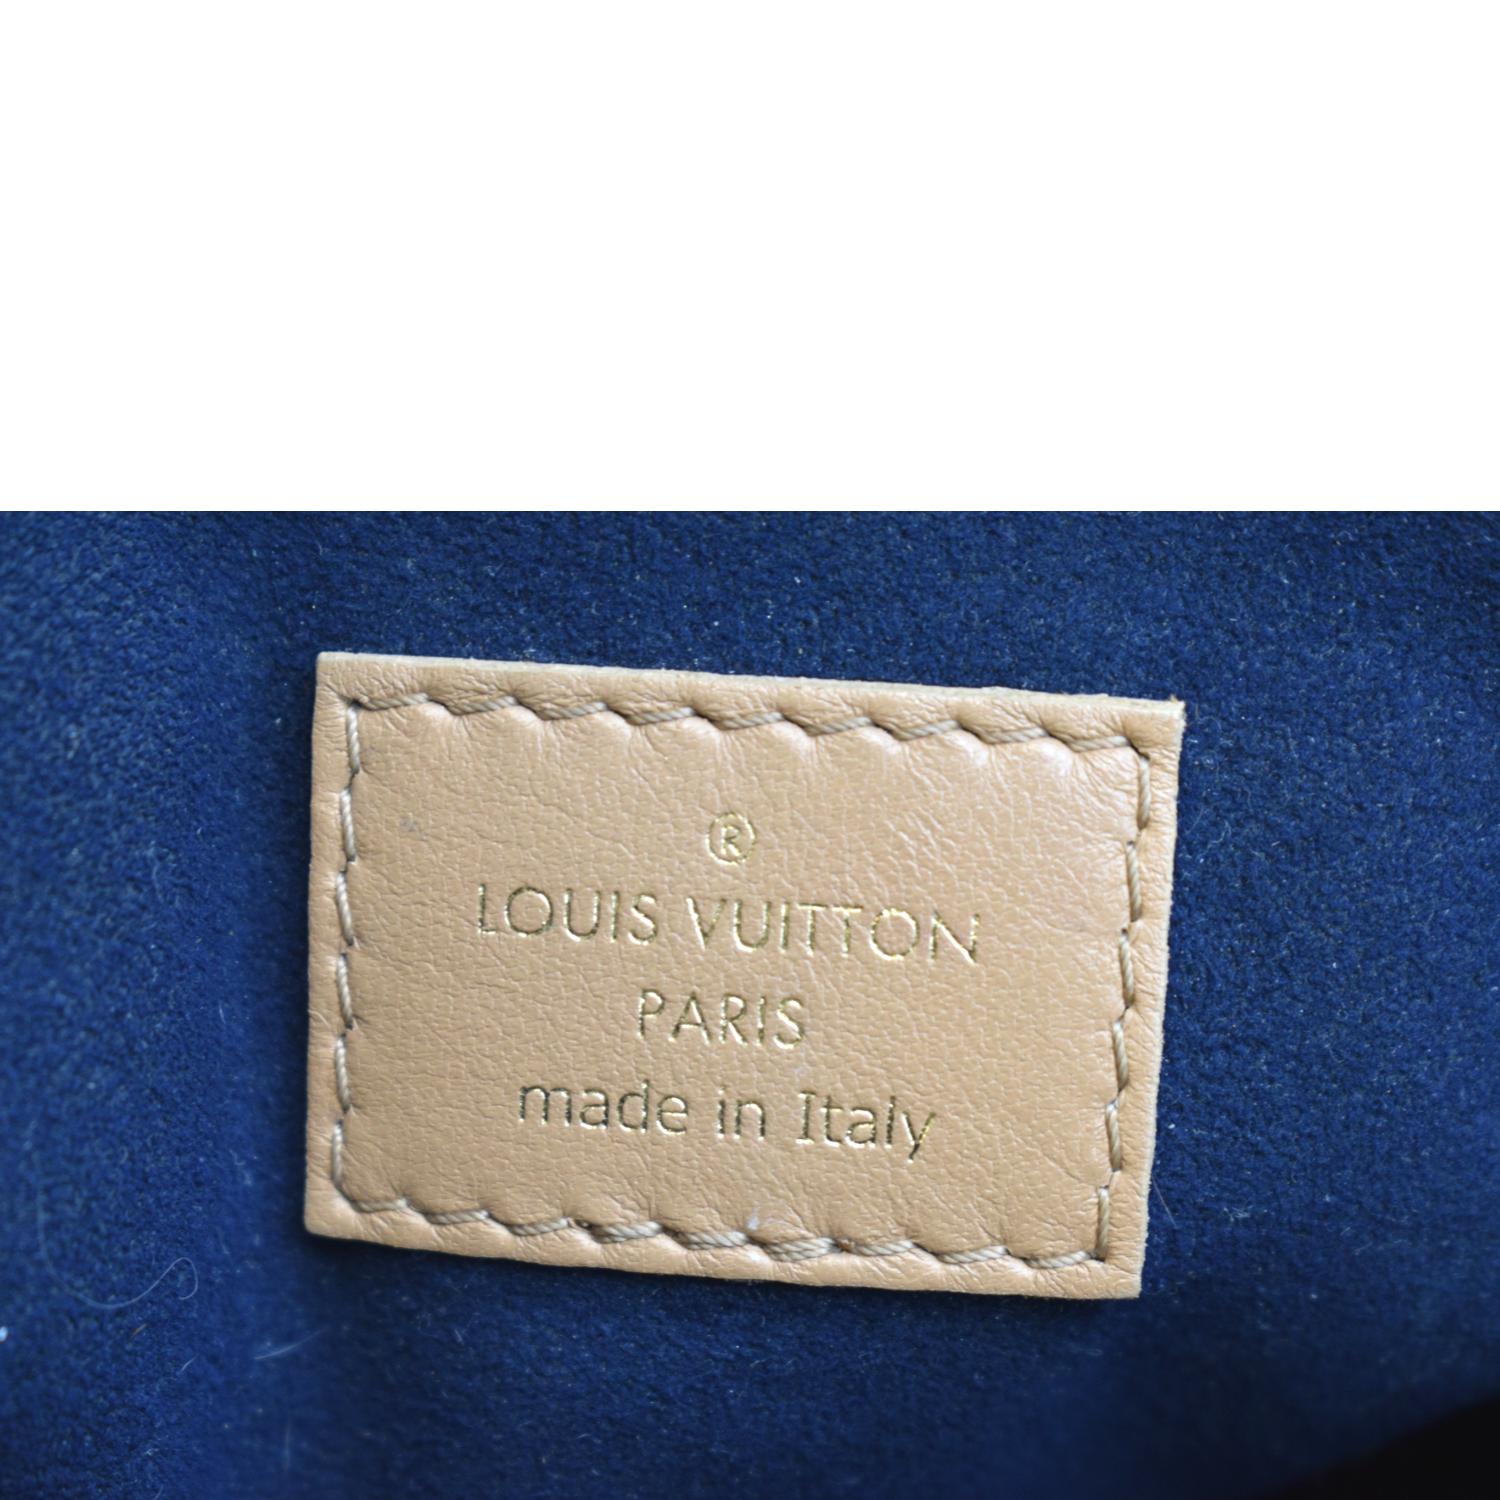 Louis Vuitton Coussin PM Camel - THE PURSE AFFAIR